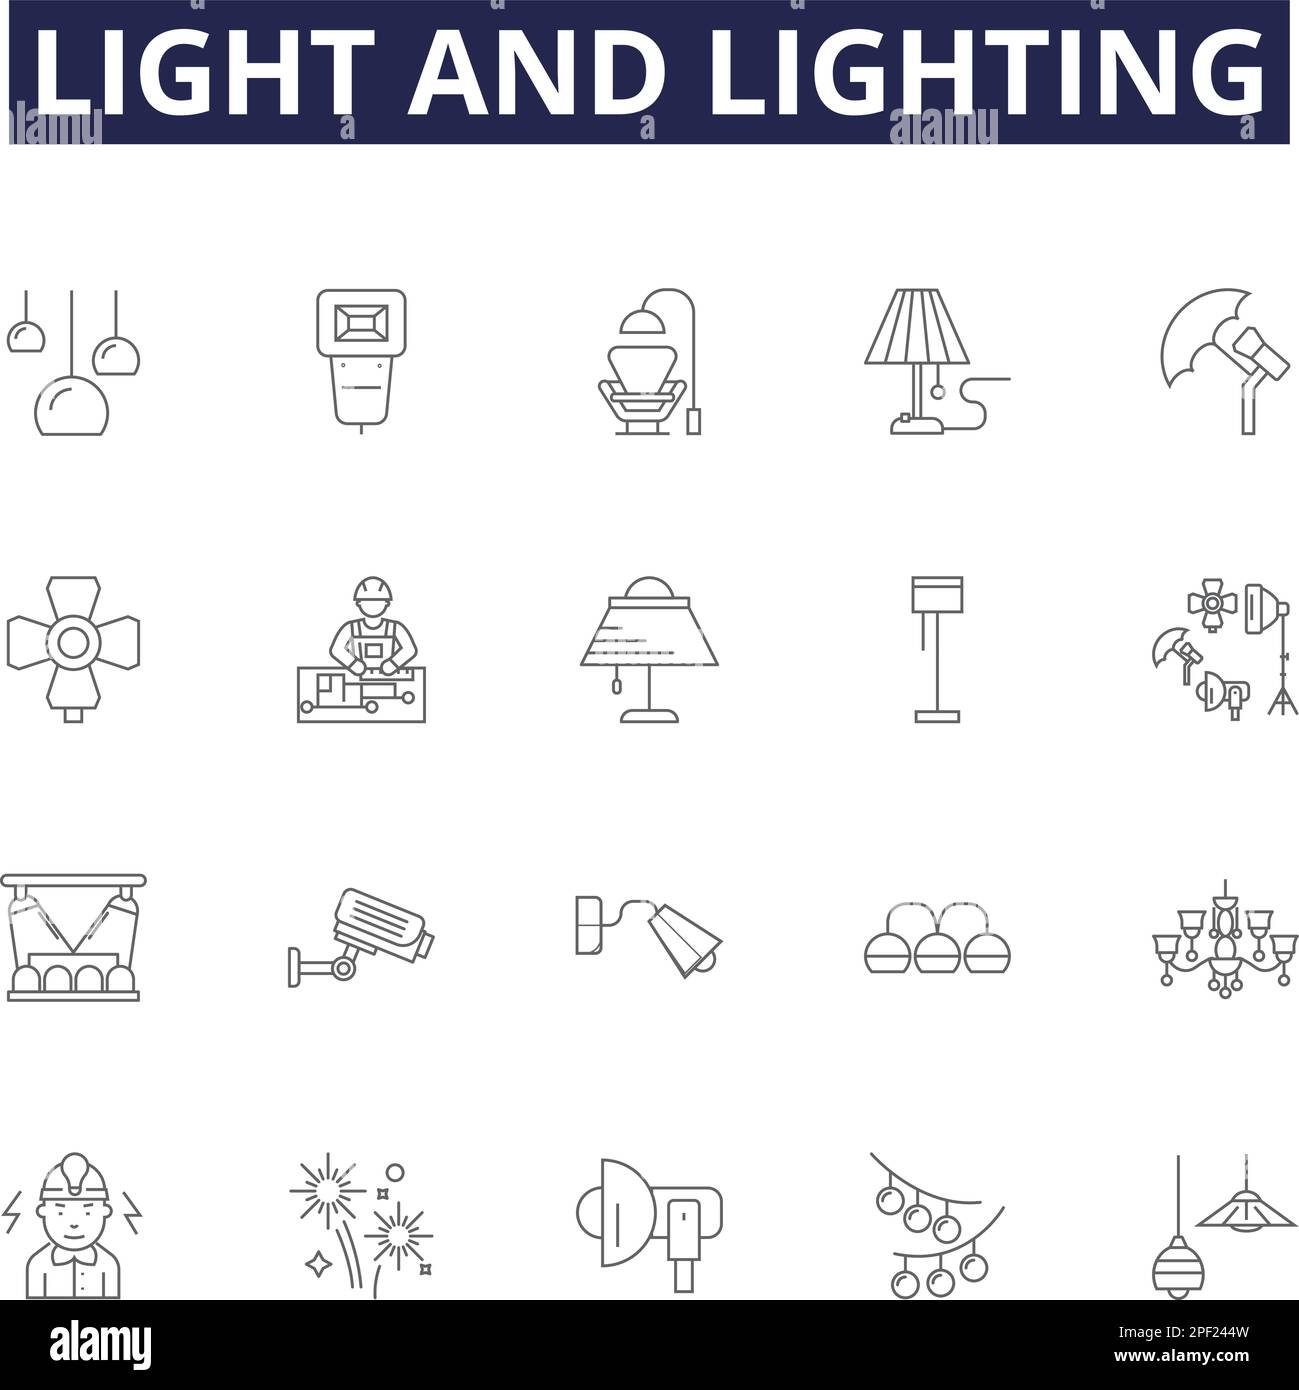 Vektorsymbole und Schilder für Licht- und Beleuchtungslinien. Beleuchtung, Neon, Sonnenlicht, Ambiente, Glitzereffekt, Kerzenlicht, Blendung, Schatten-Kontur-Vektor Stock Vektor